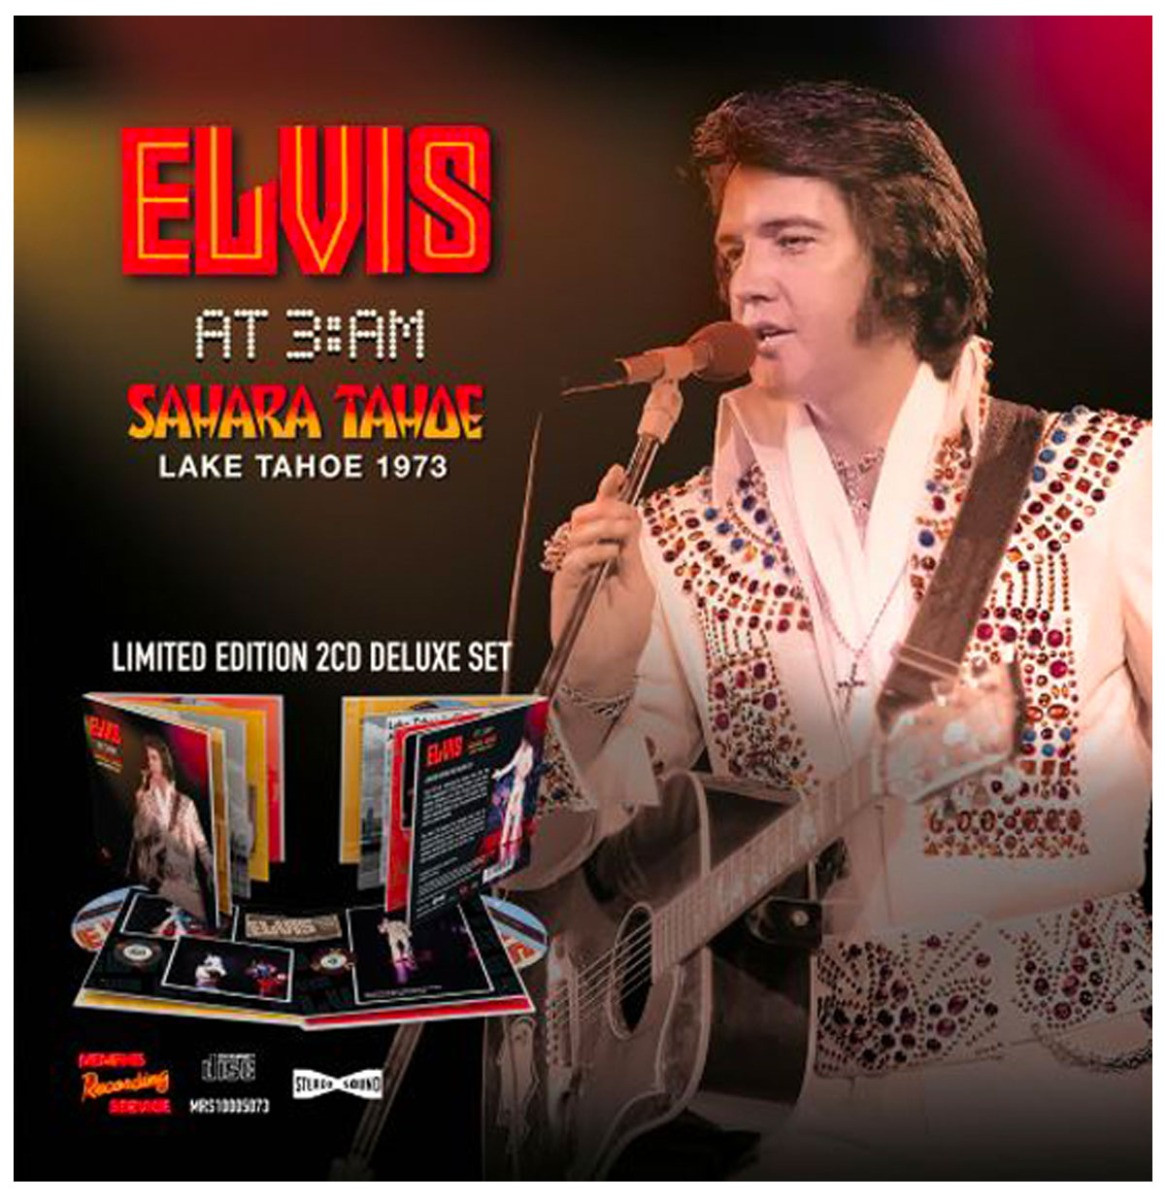 Elvis Presley - Elvis at 3:AM Sahara Tahoe Lake Tahoe 1973 2-CD